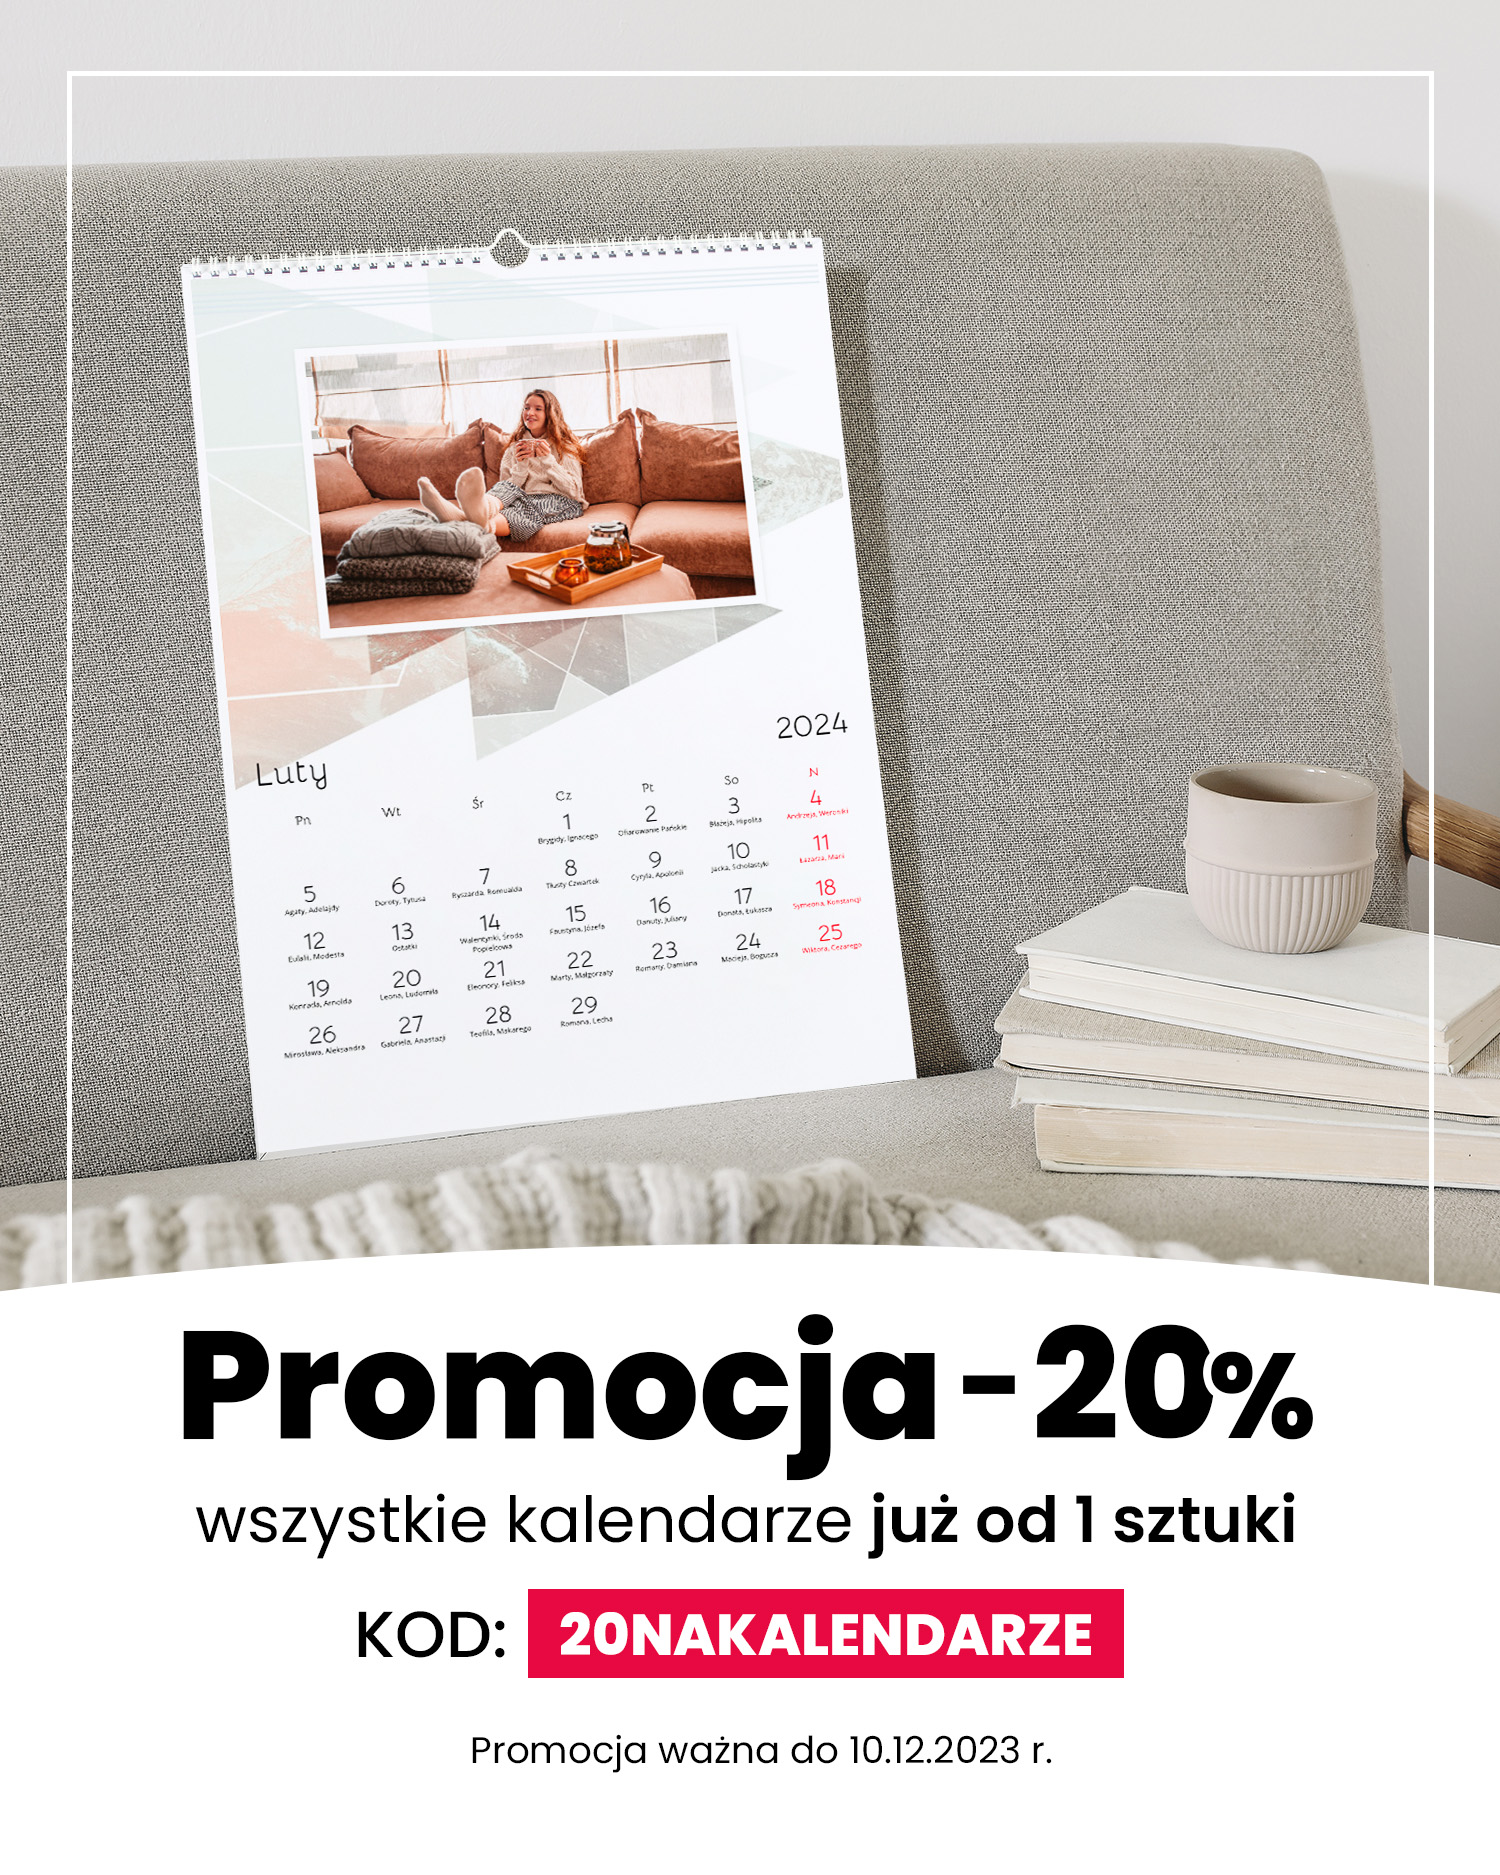 promocja -20% na kalendarze - mobile